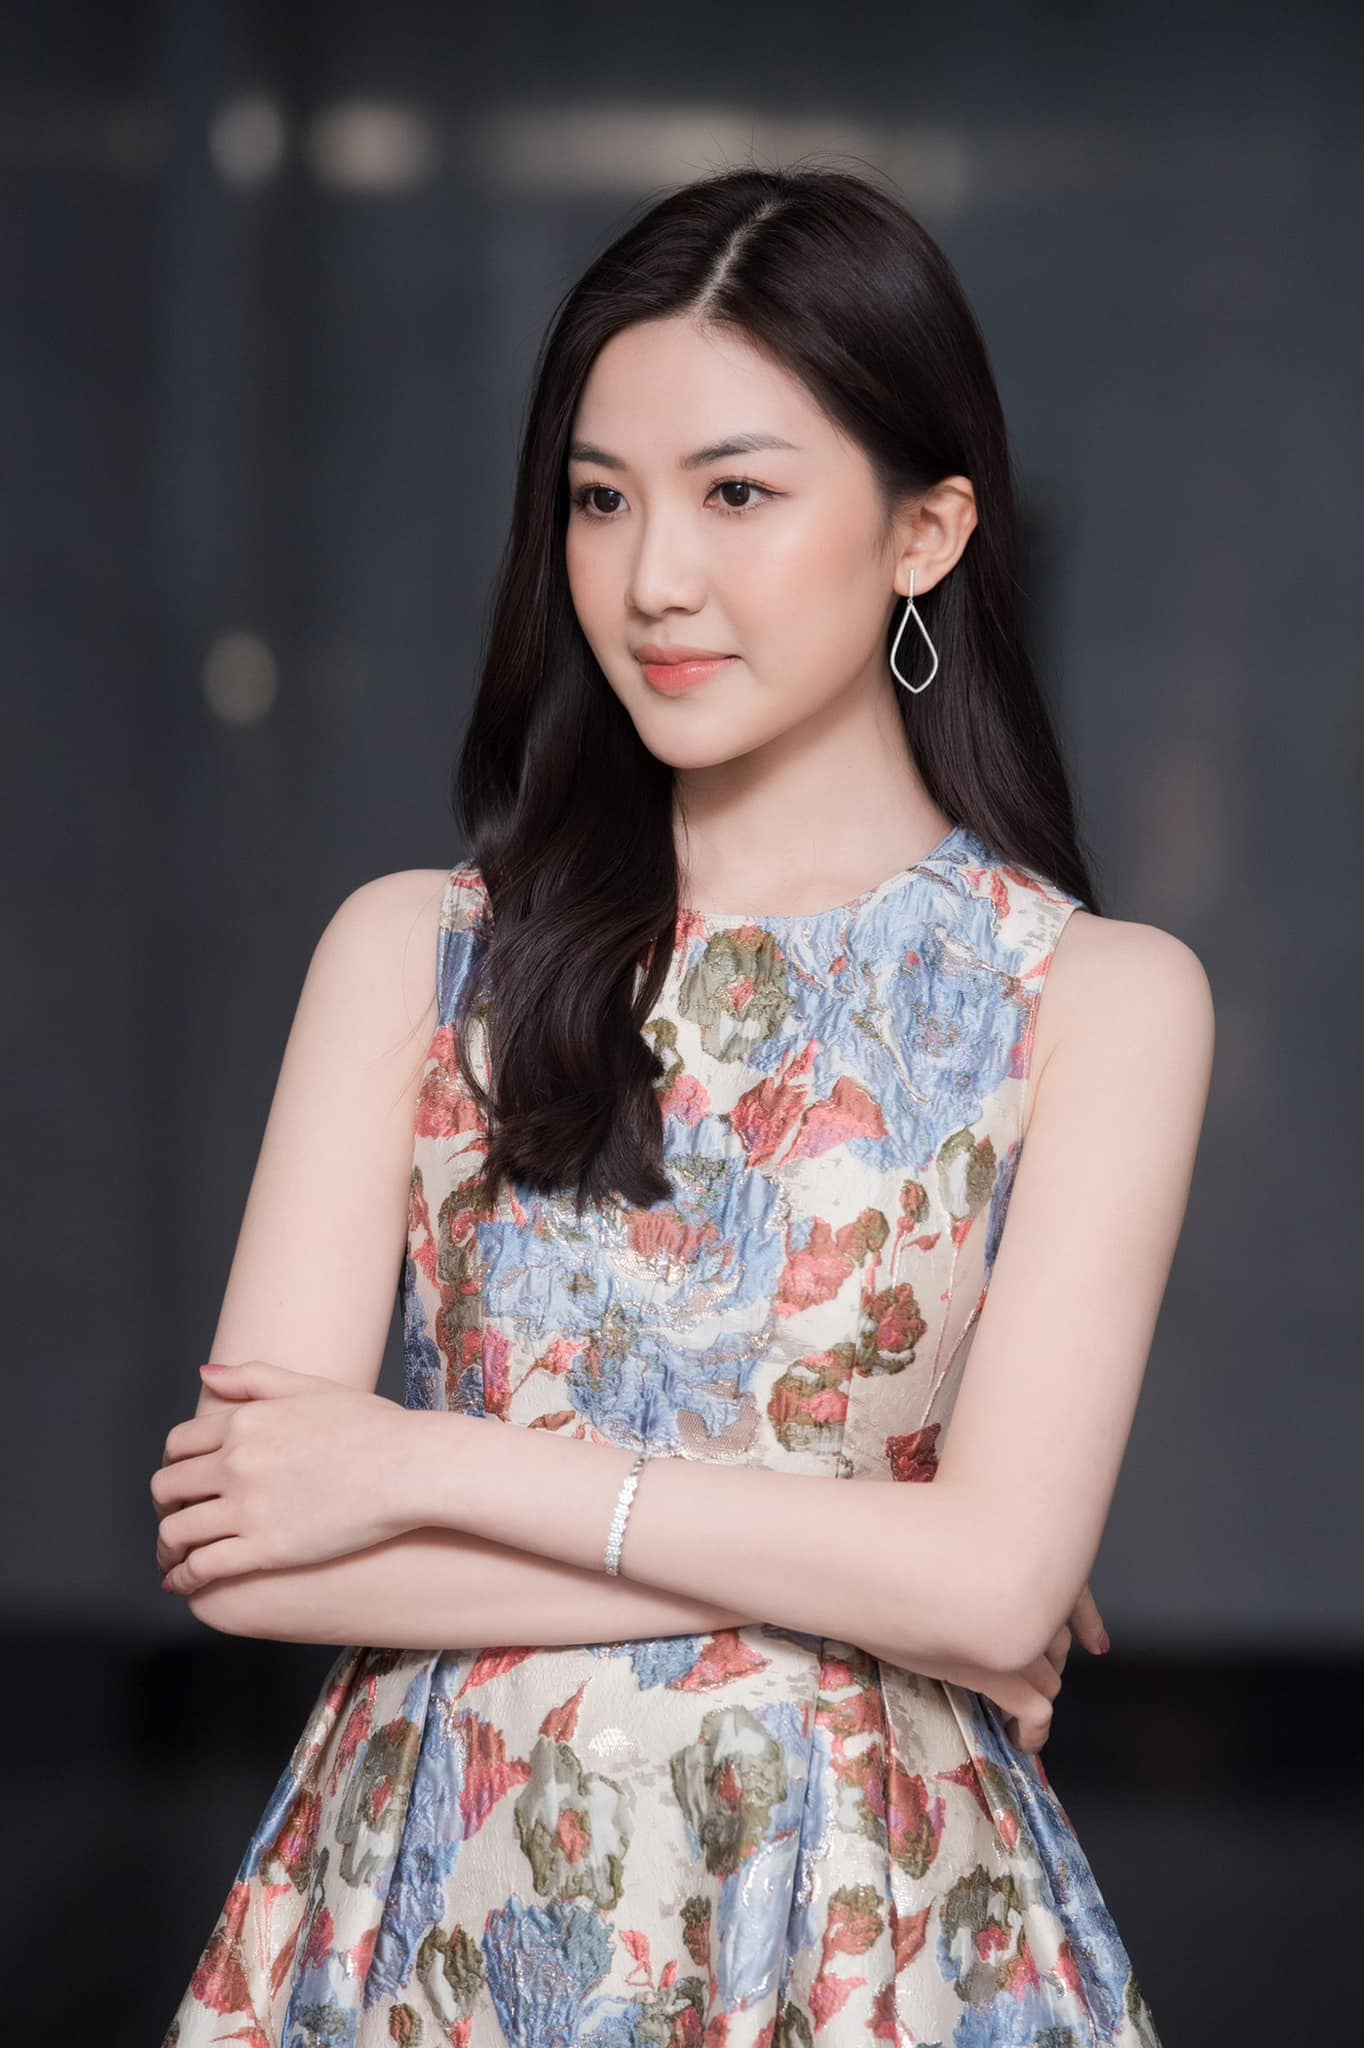 Nữ diễn viên quê Thanh Hóa mặt xinh, dáng đẹp cao hơn 1m70 chẳng thua kém hoa hậu - 3